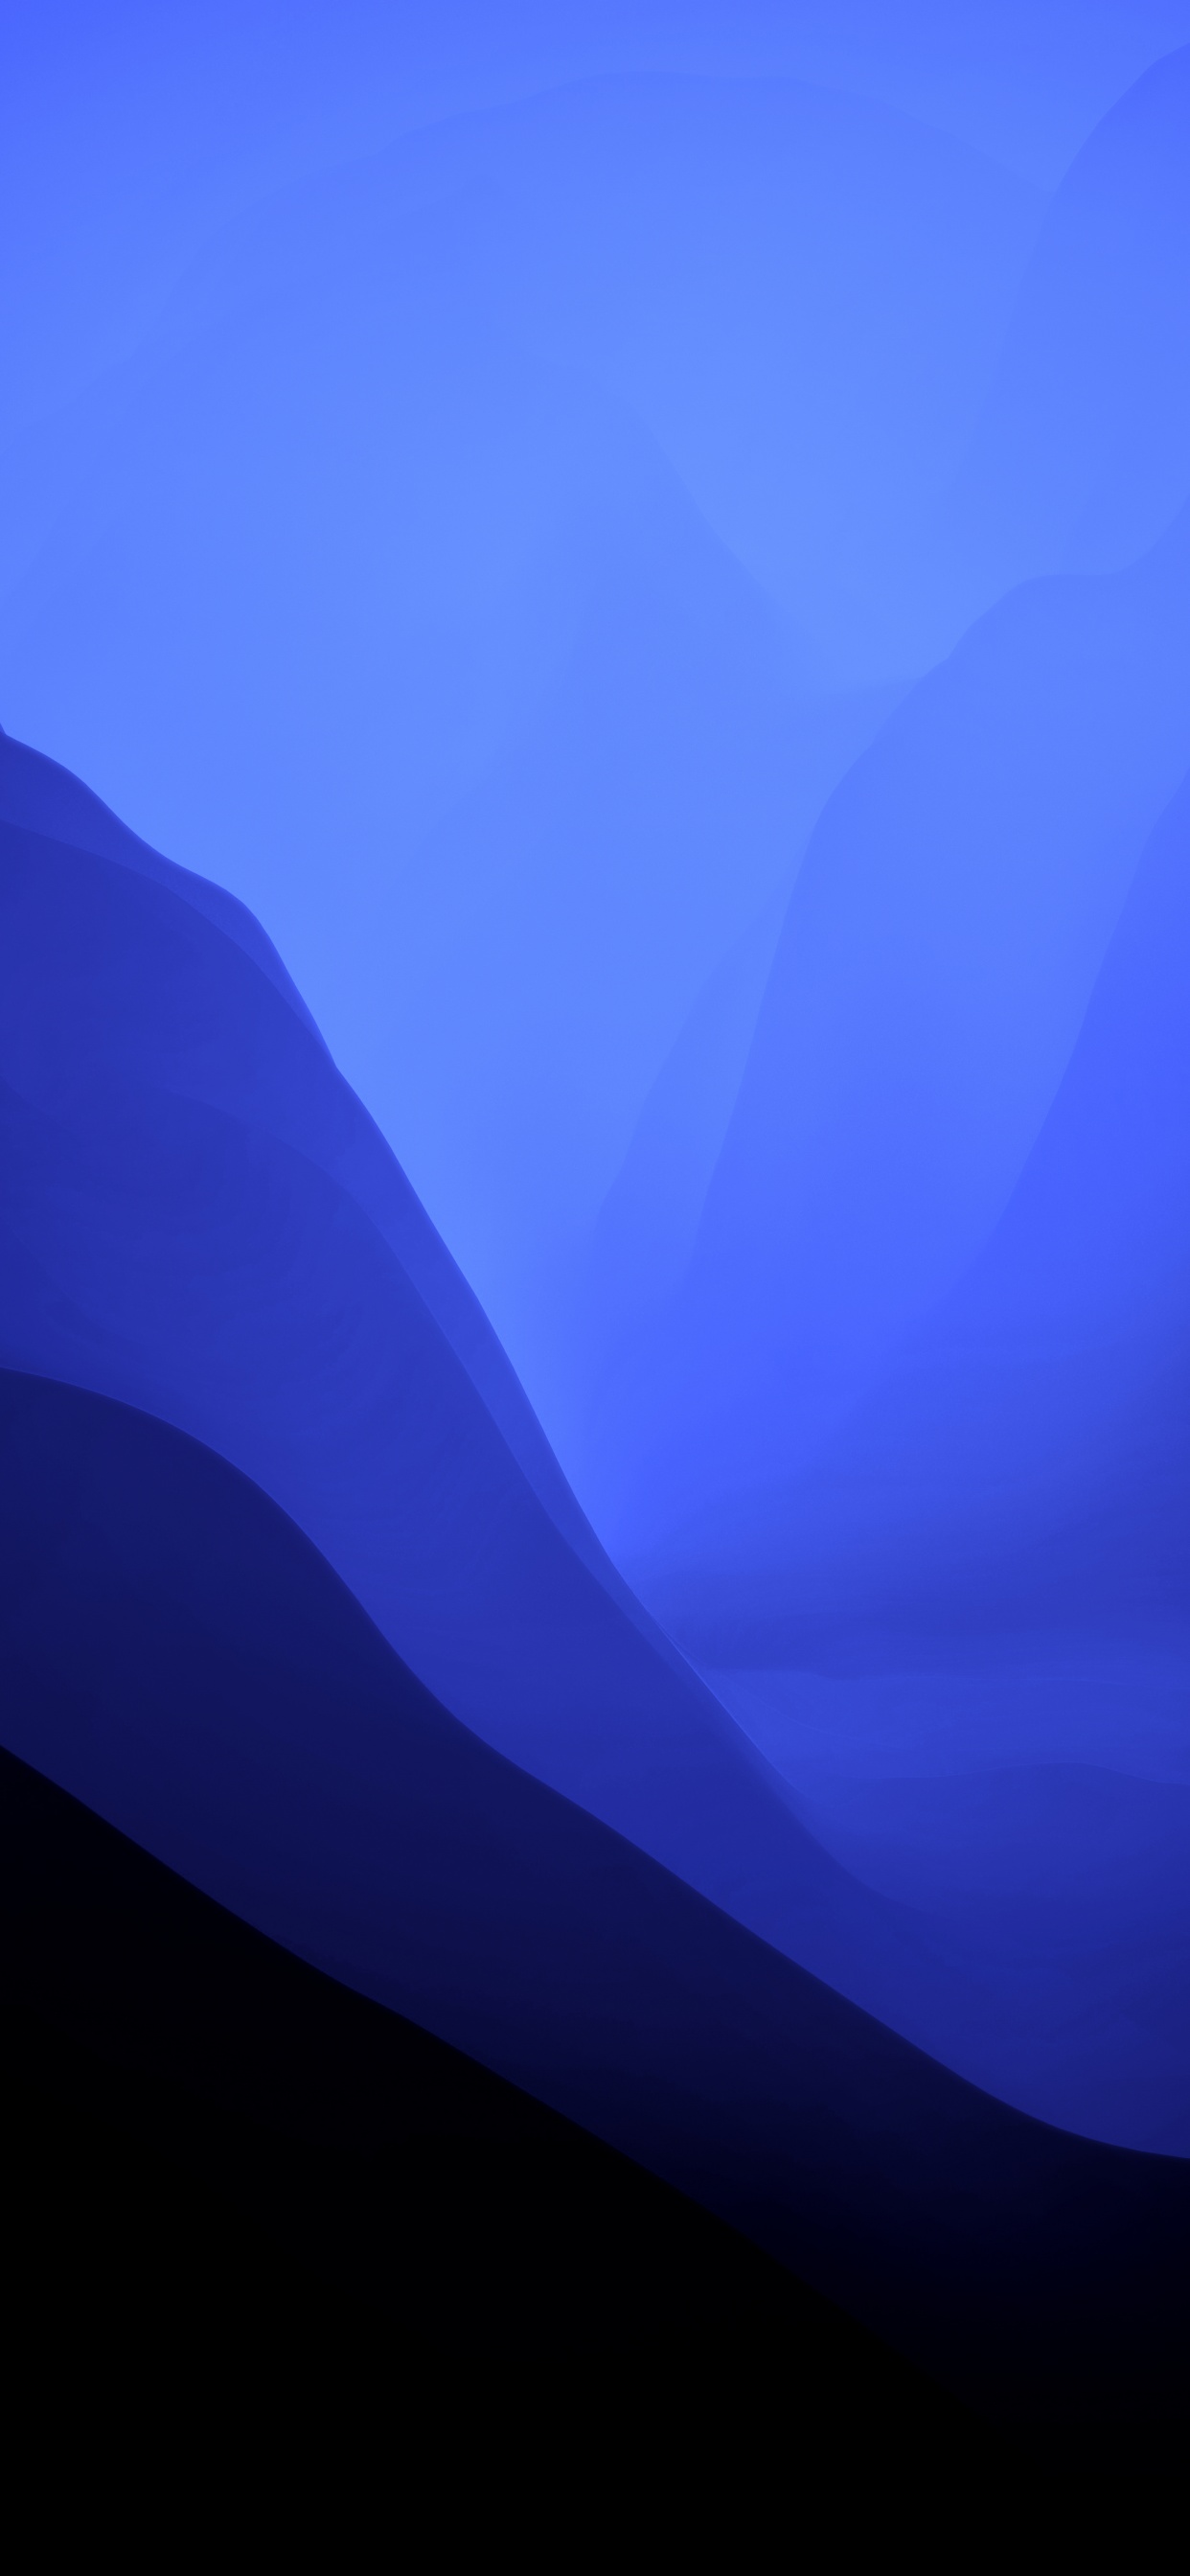 Làm mới không gian màn hình với hình nền macOS Monterey tuyệt đẹp có độ phân giải kỹ thuật số 4K sắc nét như thật. Tận hưởng sự độc đáo của macOS Monterey với tùy chọn hình nền không chỉ có màu đen mà còn kết hợp hiệu ứng gradient giúp tạo nên một không gian ngộ nghĩnh và ấn tượng. Tải hình nền của bạn và đắm chìm trong thế giới đầy mê hoặc của macOS Monterey.